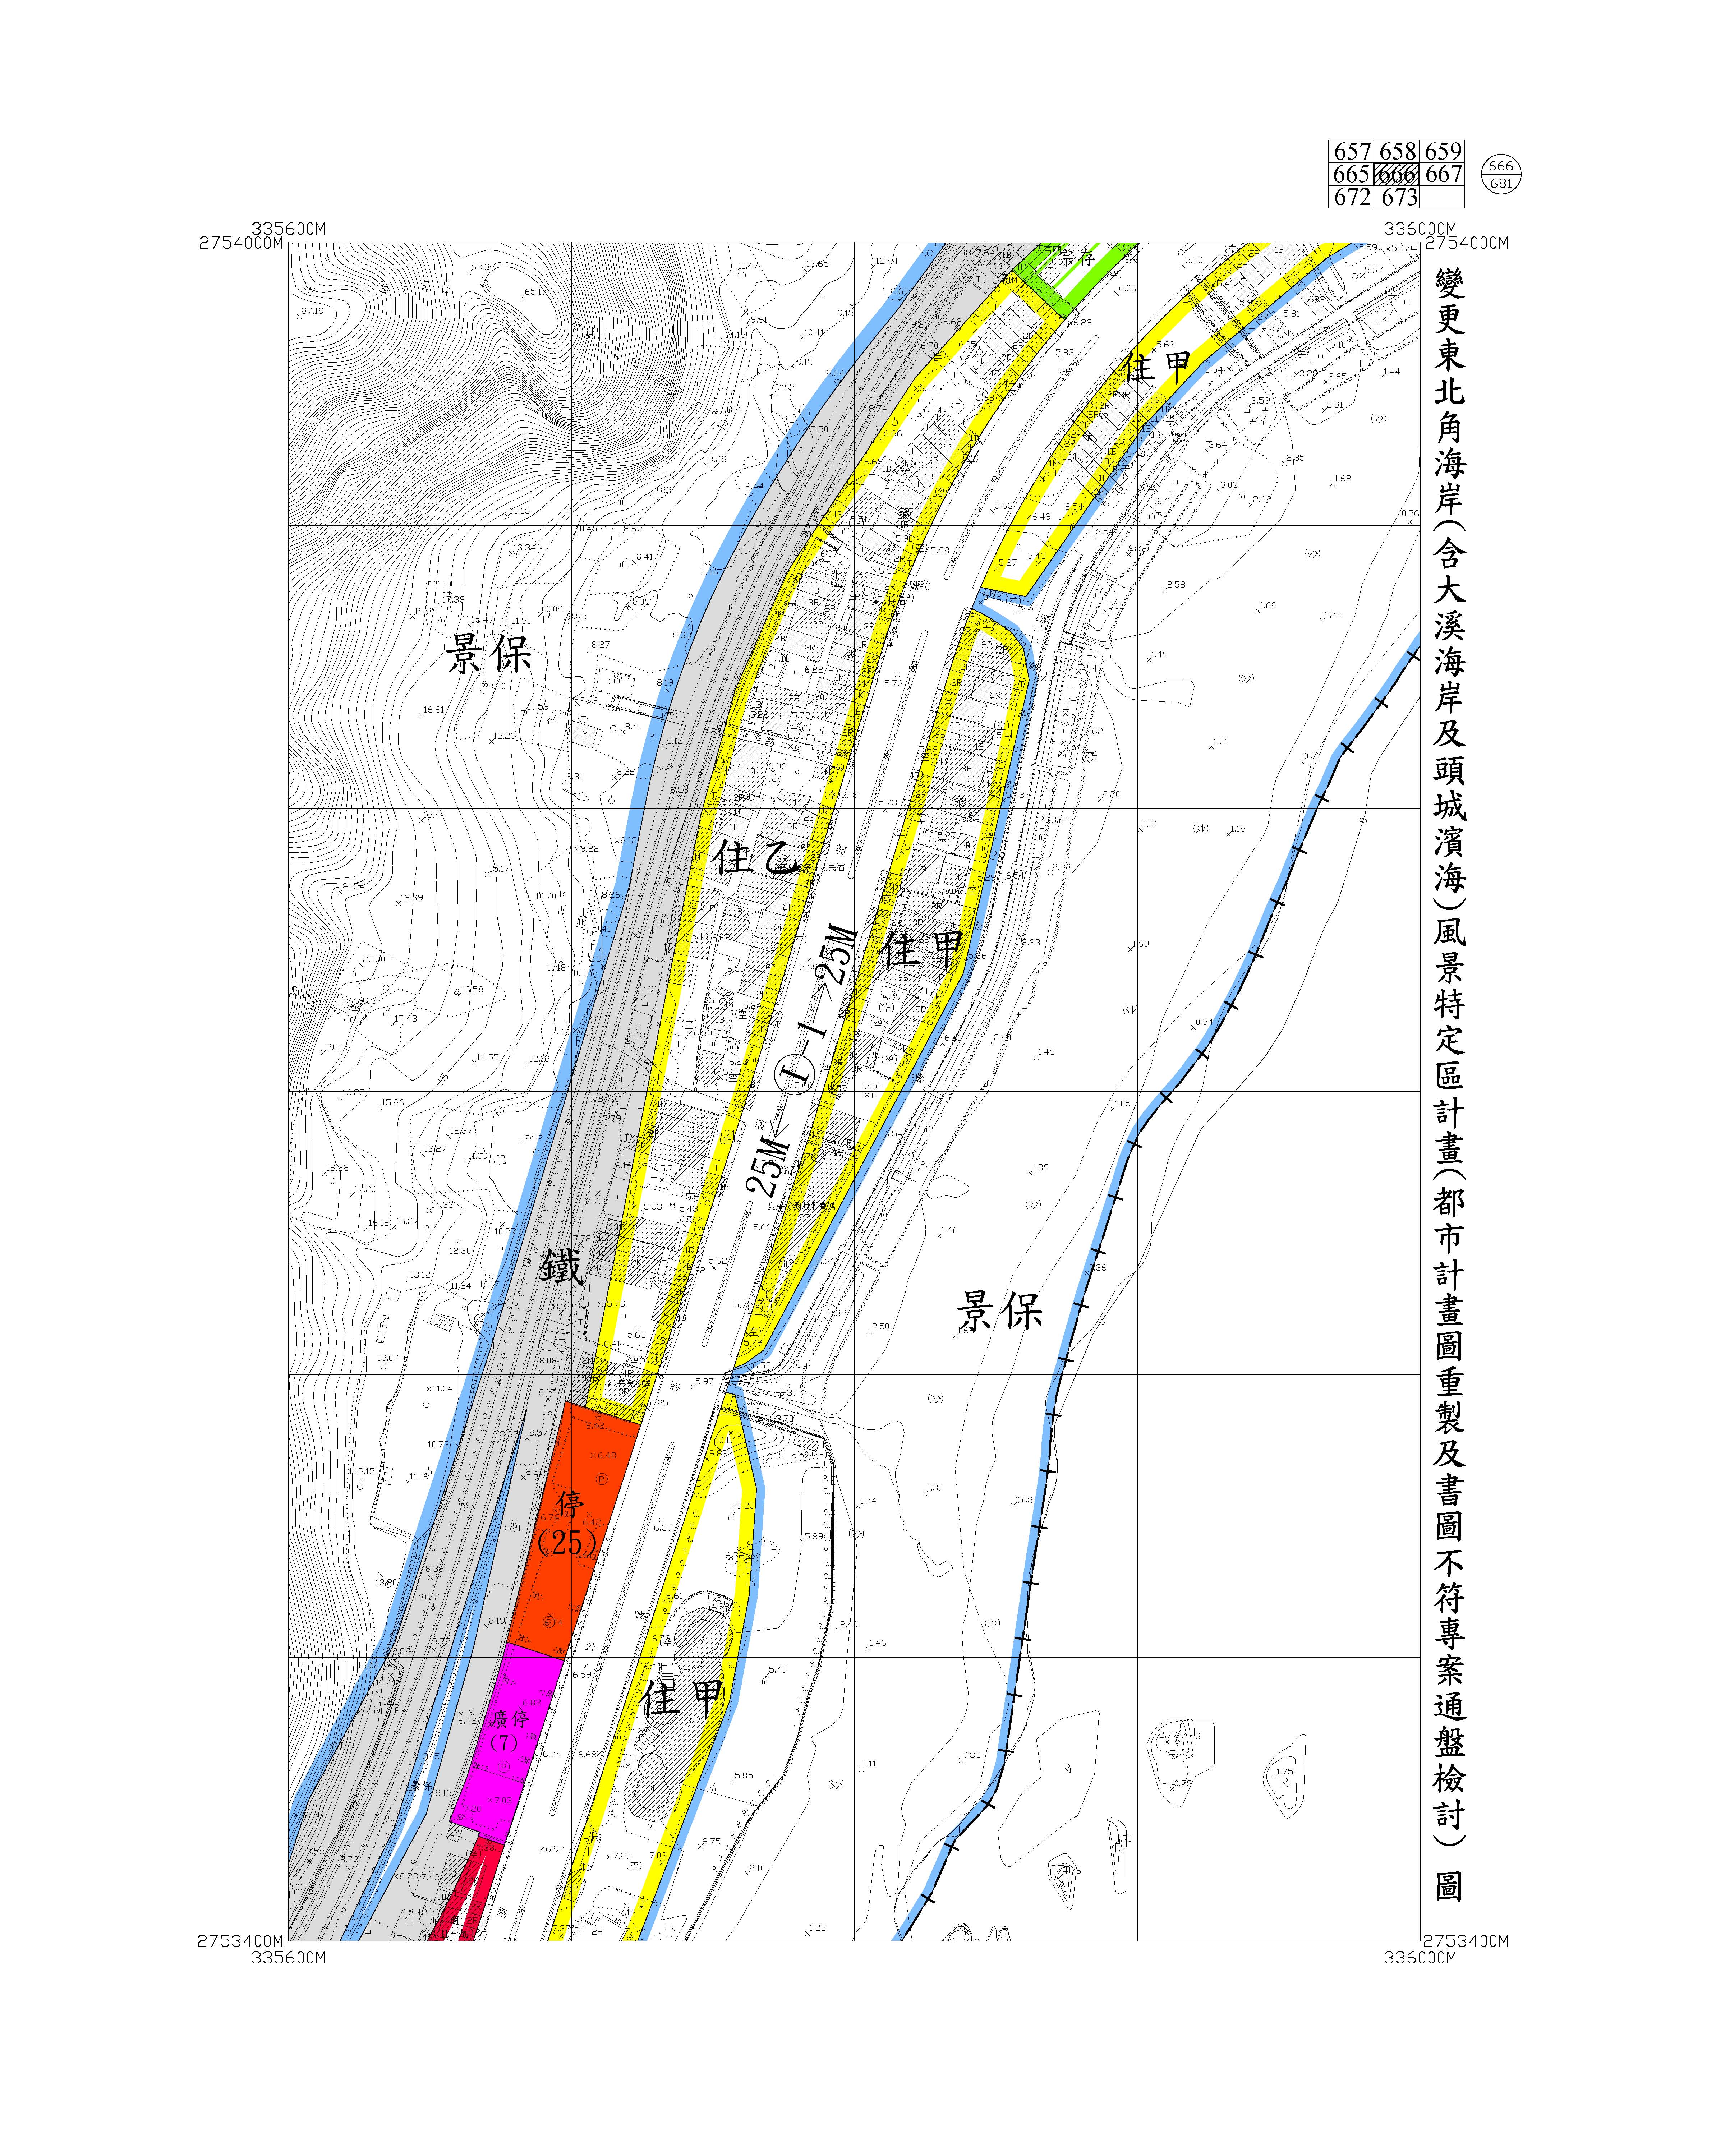 含大溪海岸及頭城濱海都市計畫圖重製及書圖不符專案通盤檢討圖資675